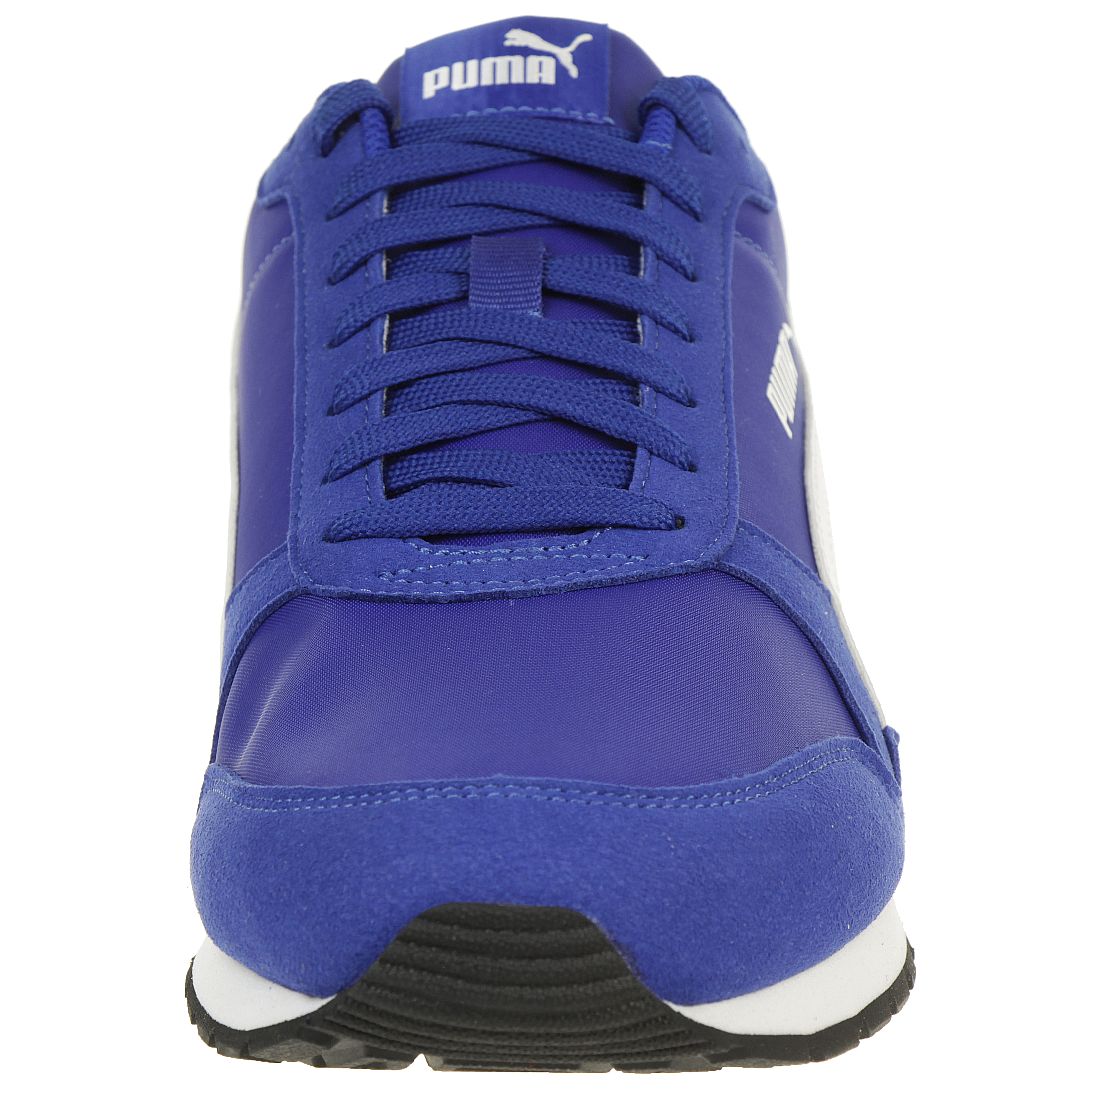 Puma ST Runner v2 NL Sneaker Herren blau 365278 14